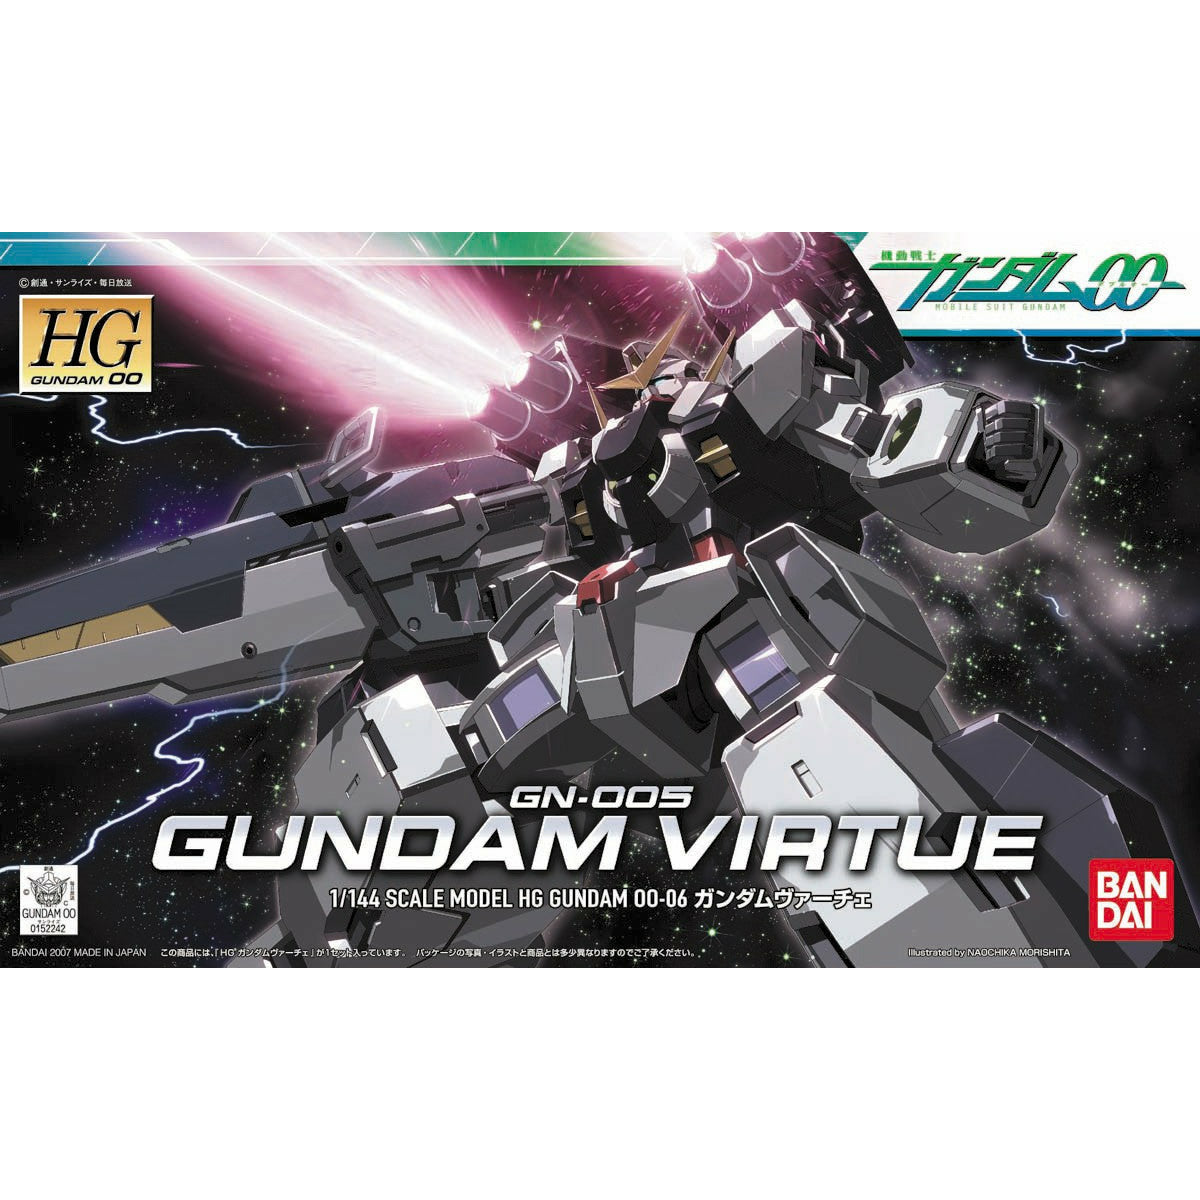 HG 1/144 Gundam 00 #06 GN-005 Gundam Virtue #0152242 by Bandai